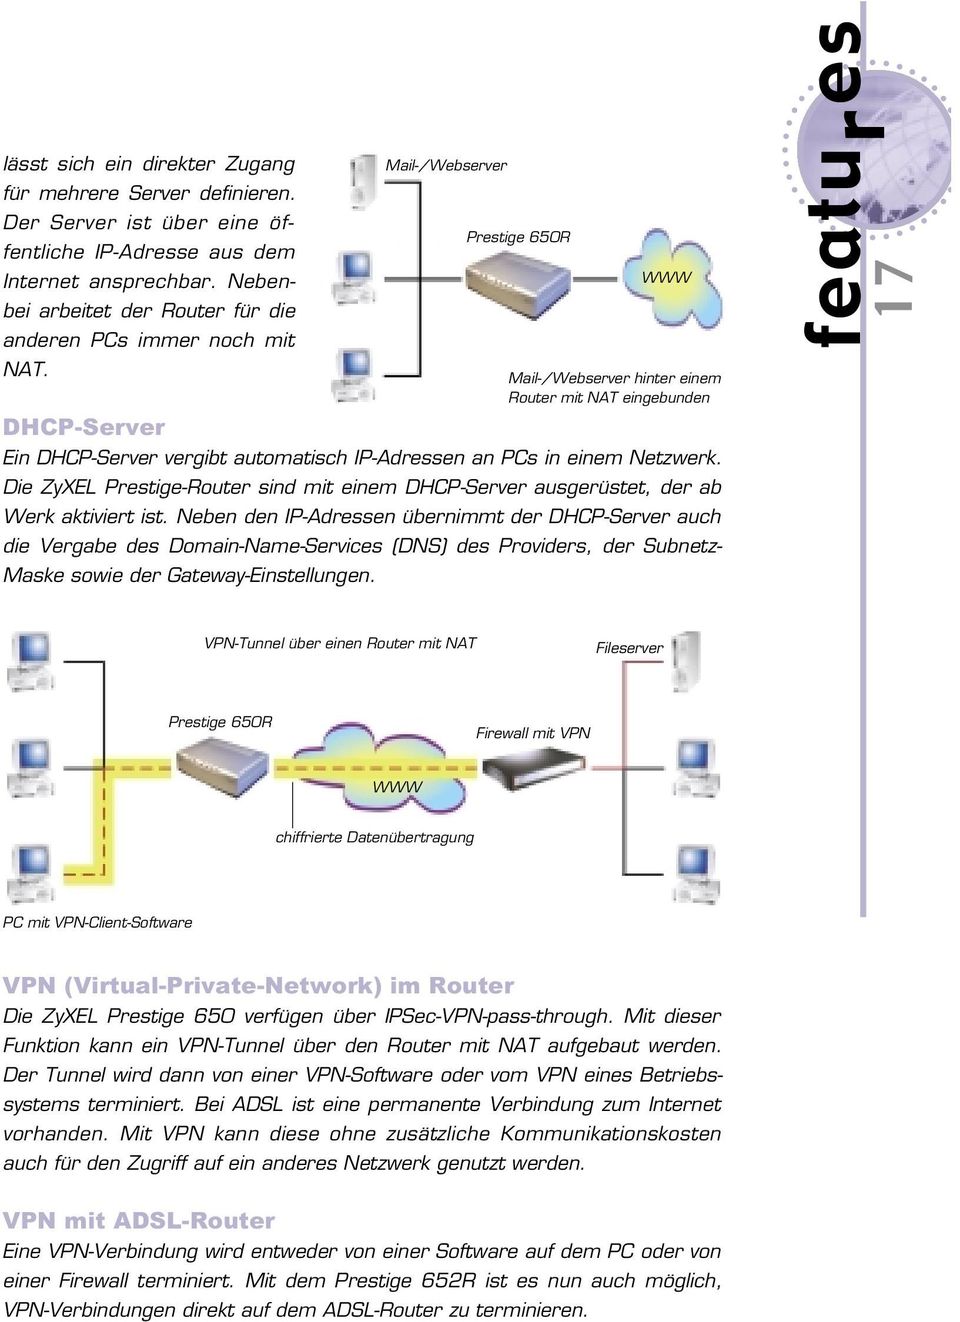 Mail-/Webserver Prestige 650R WWW Mail-/Webserver hinter einem Router mit NAT eingebunden DHCP-Server Ein DHCP-Server vergibt automatisch IP-Adressen an PCs in einem Netzwerk.